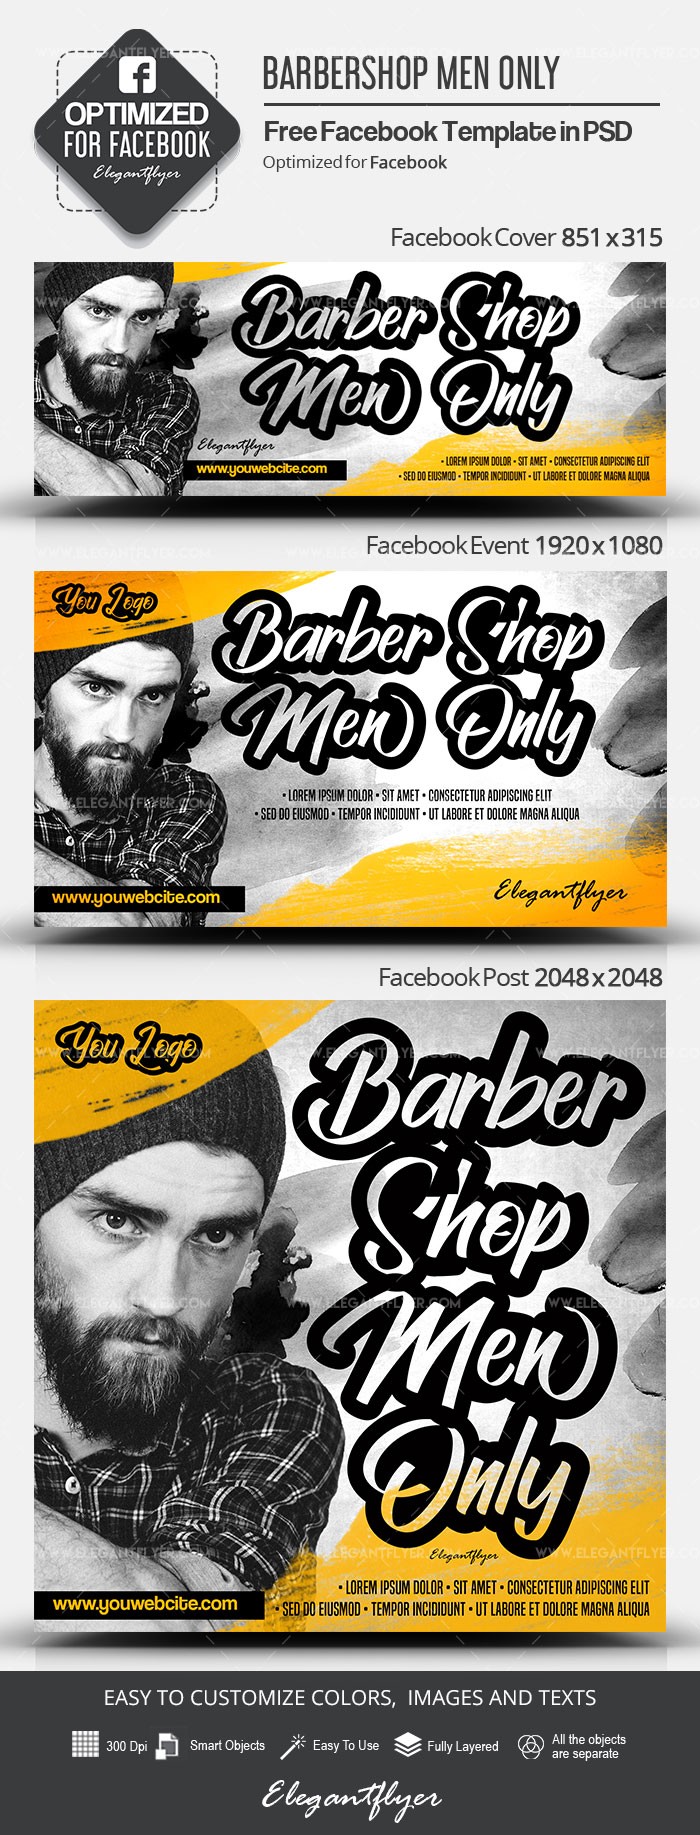 Barbershop solo per uomini su Facebook by ElegantFlyer